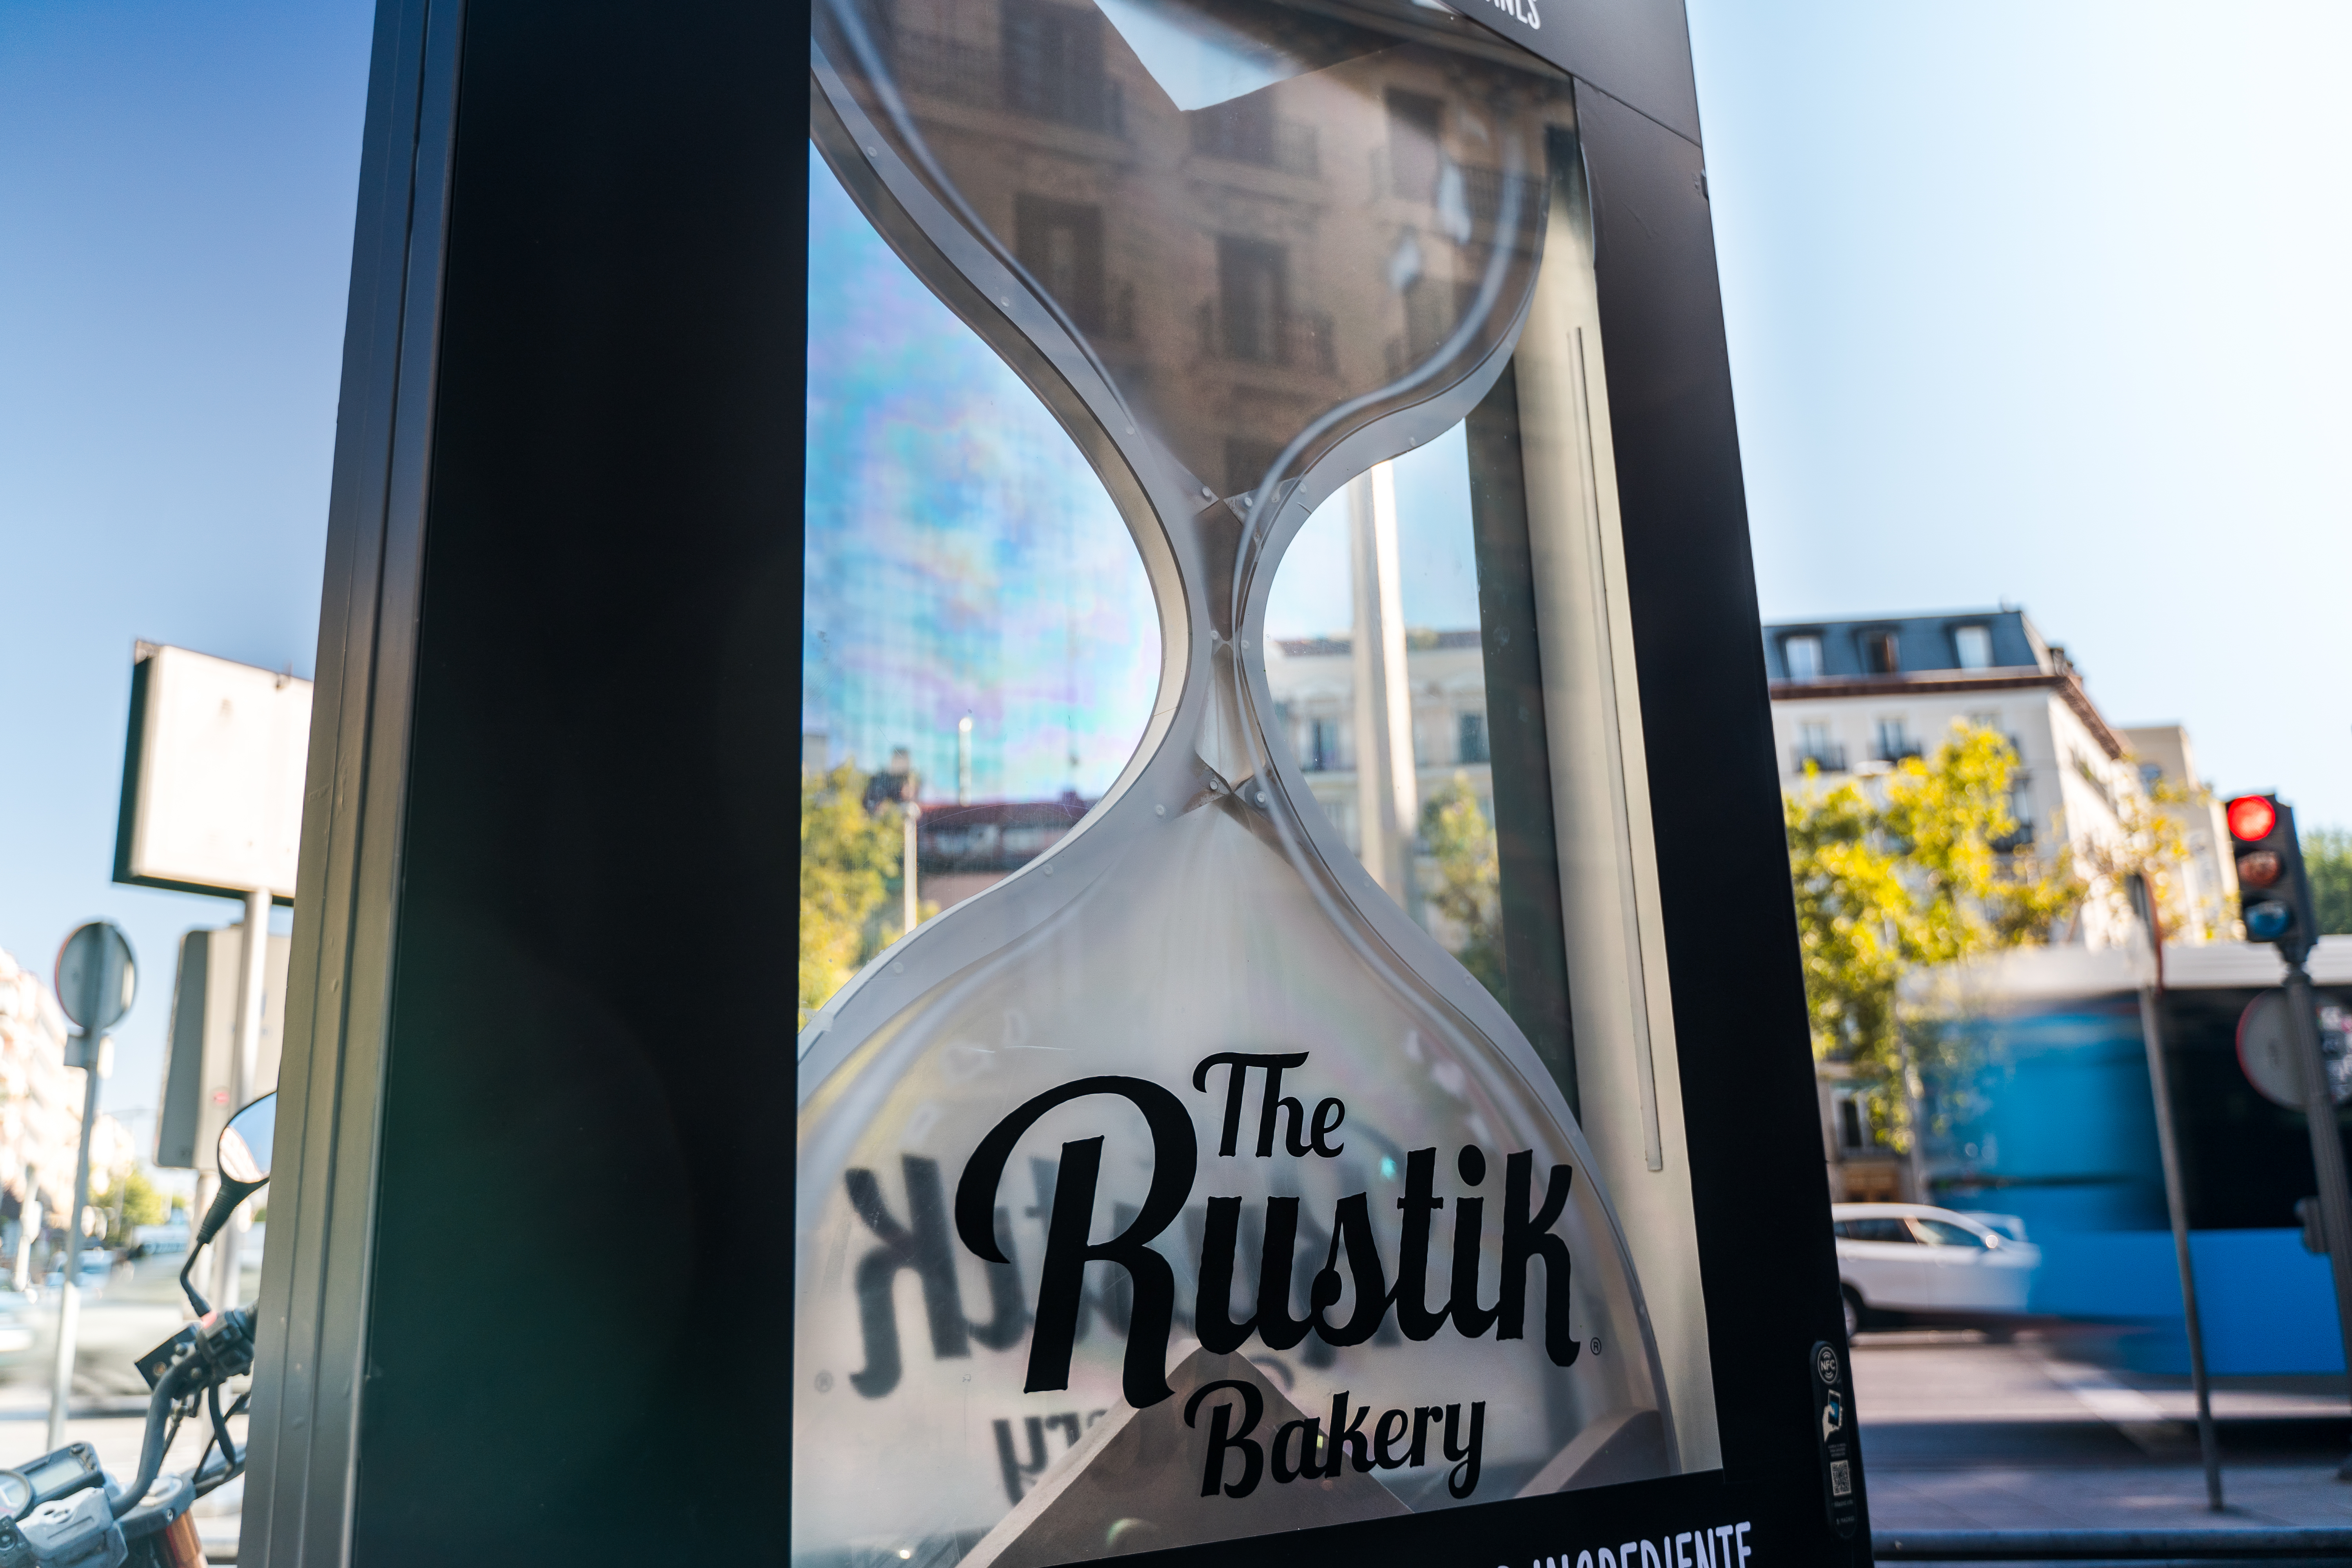 The Rustik Bakery 5